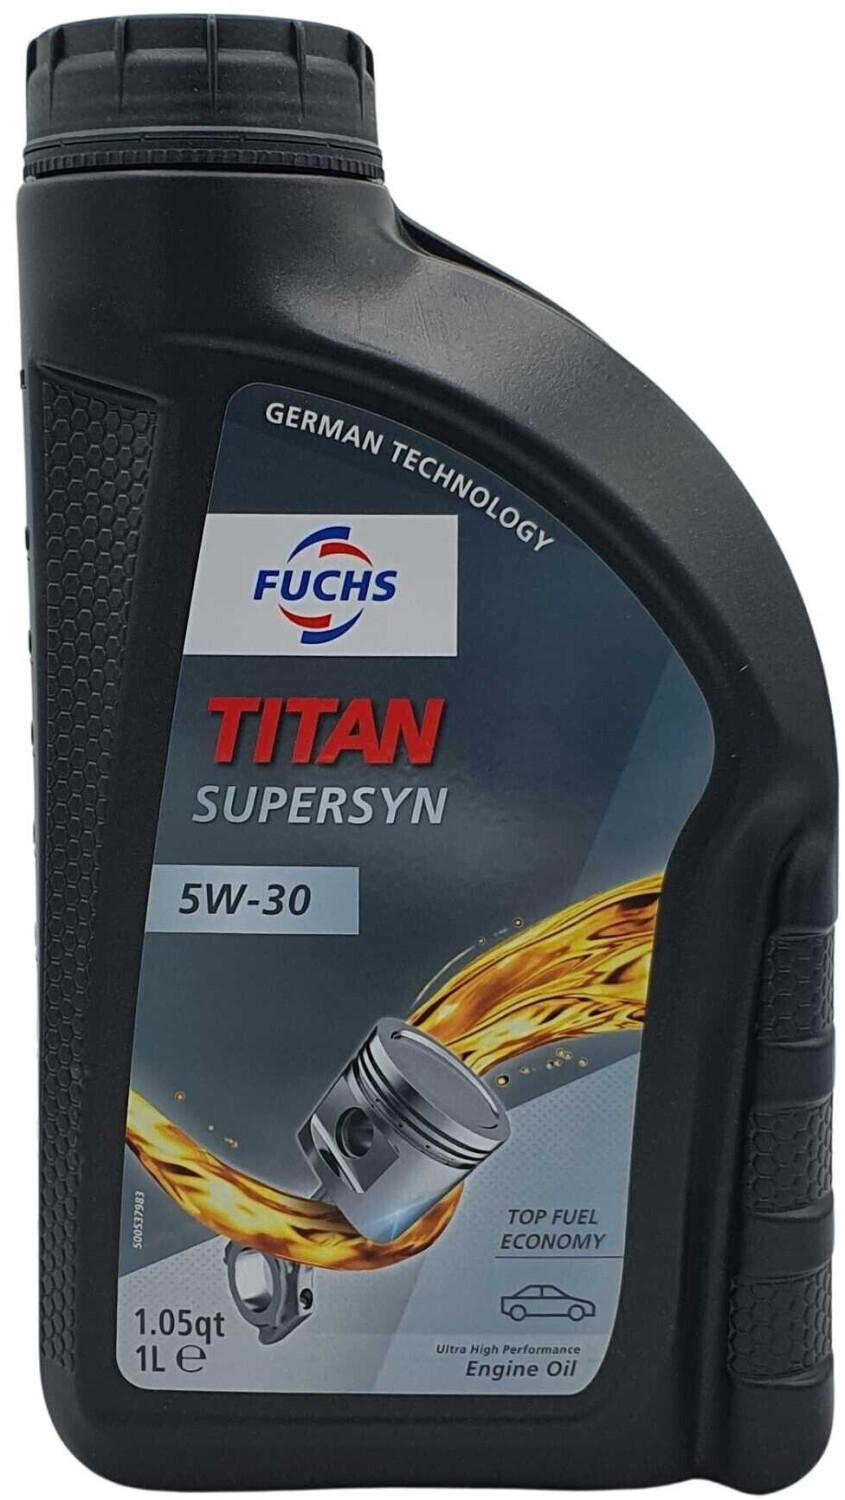 Fuchs Titan Supersyn 5W-30 ab 7,79 €